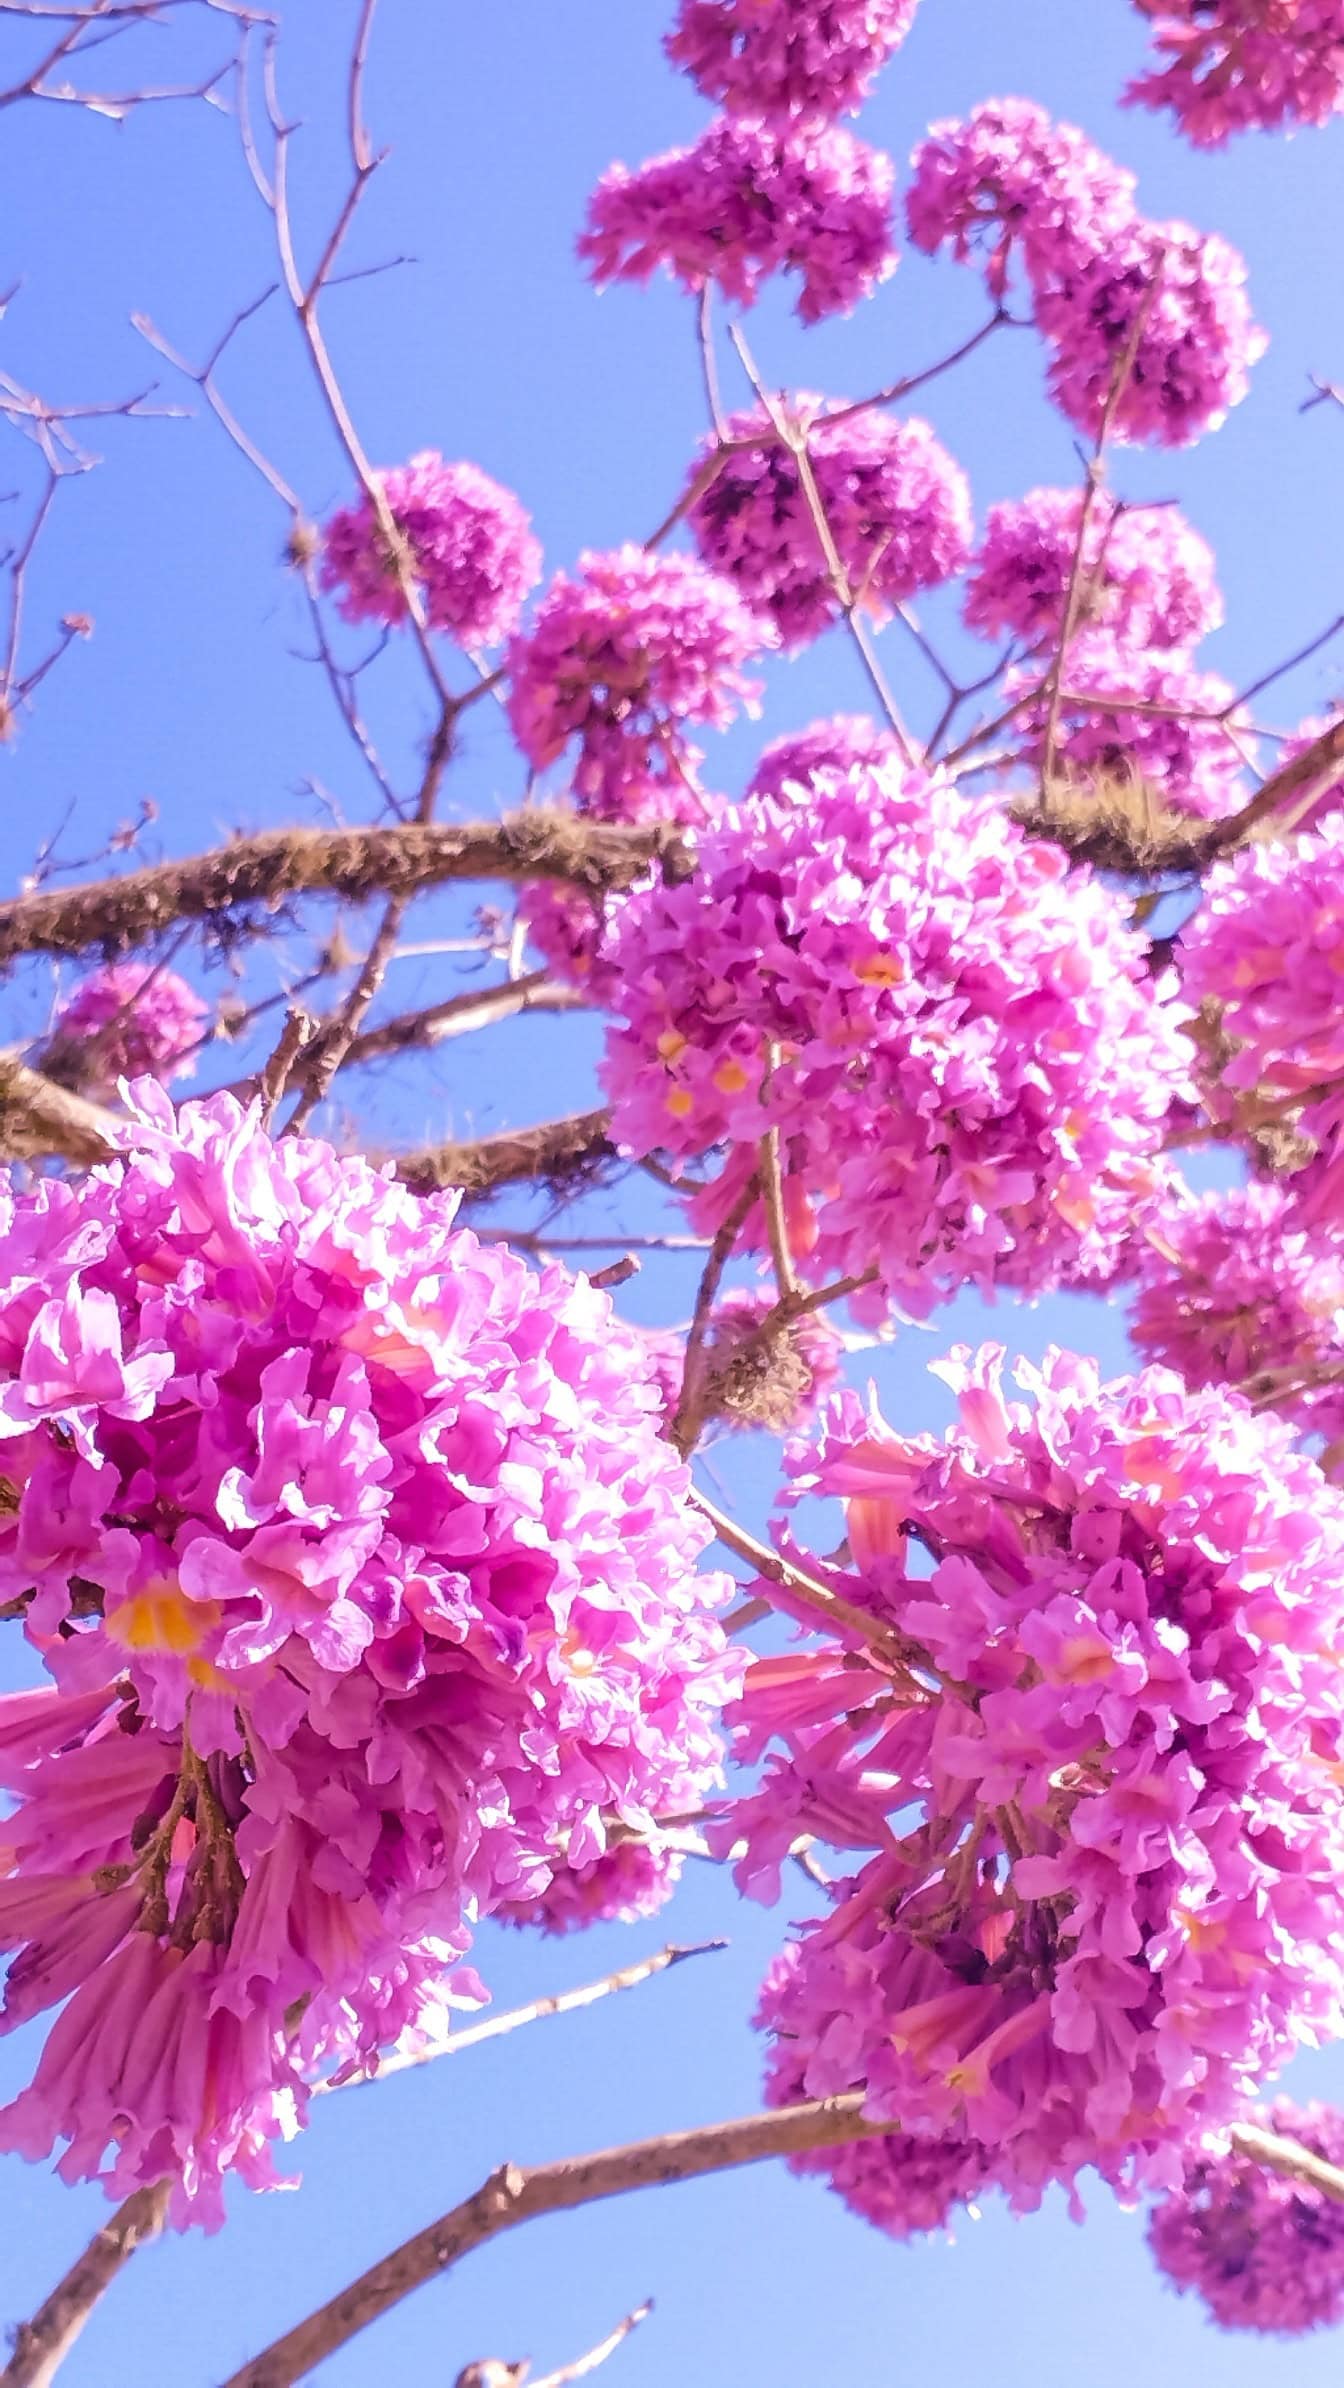 Unas hermosas flores de color púrpura rosado en el árbol llamado árbol de trompeta rosado o poui rosado (Tabebuia rosea)